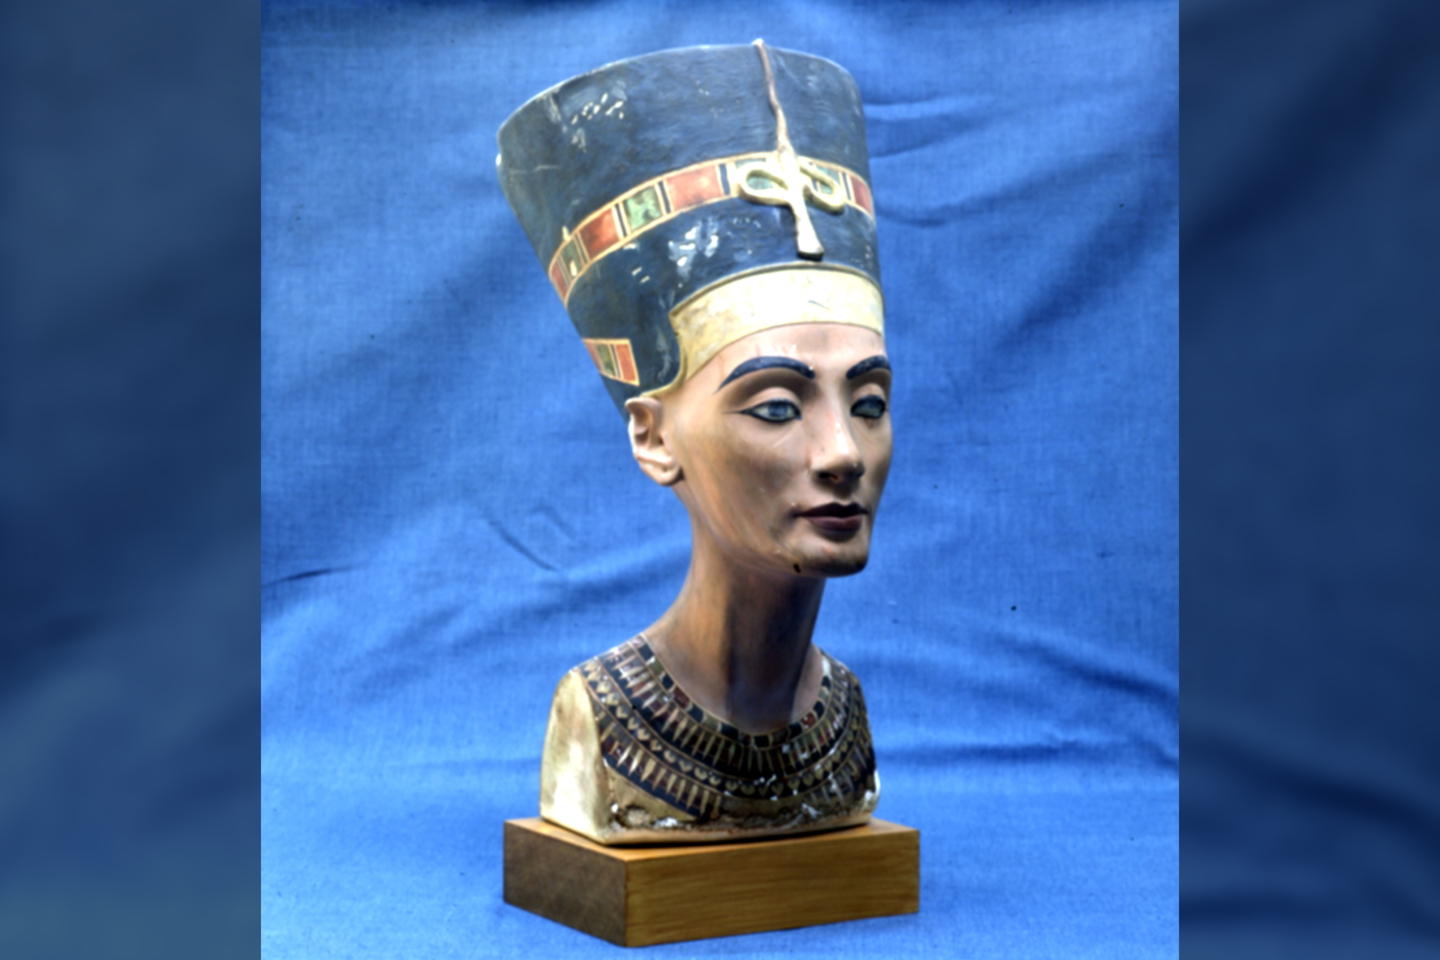  Karalienės Nefertitės kapo vieta ilgą laiką buvo paslaptis. <br> AKG / Scanpix nuotr.